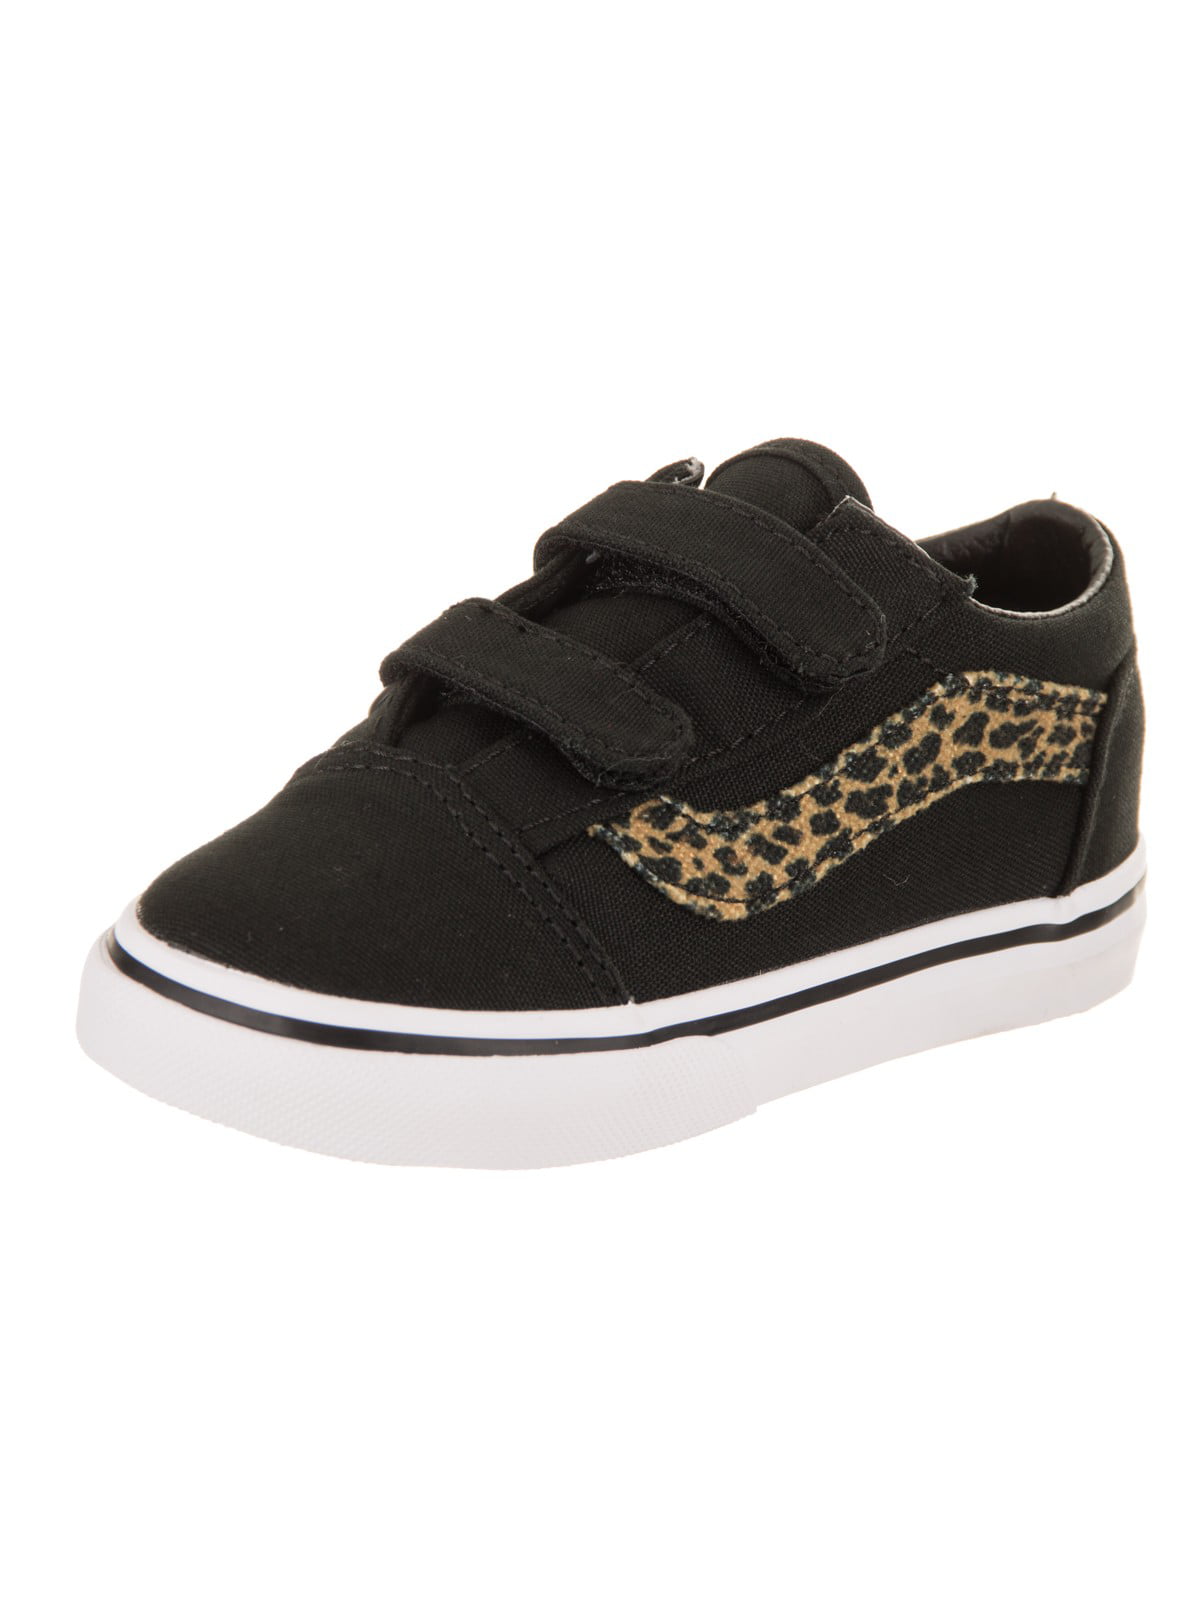 Vans Old V (Mini Leopard) Skate Shoe - Walmart.com